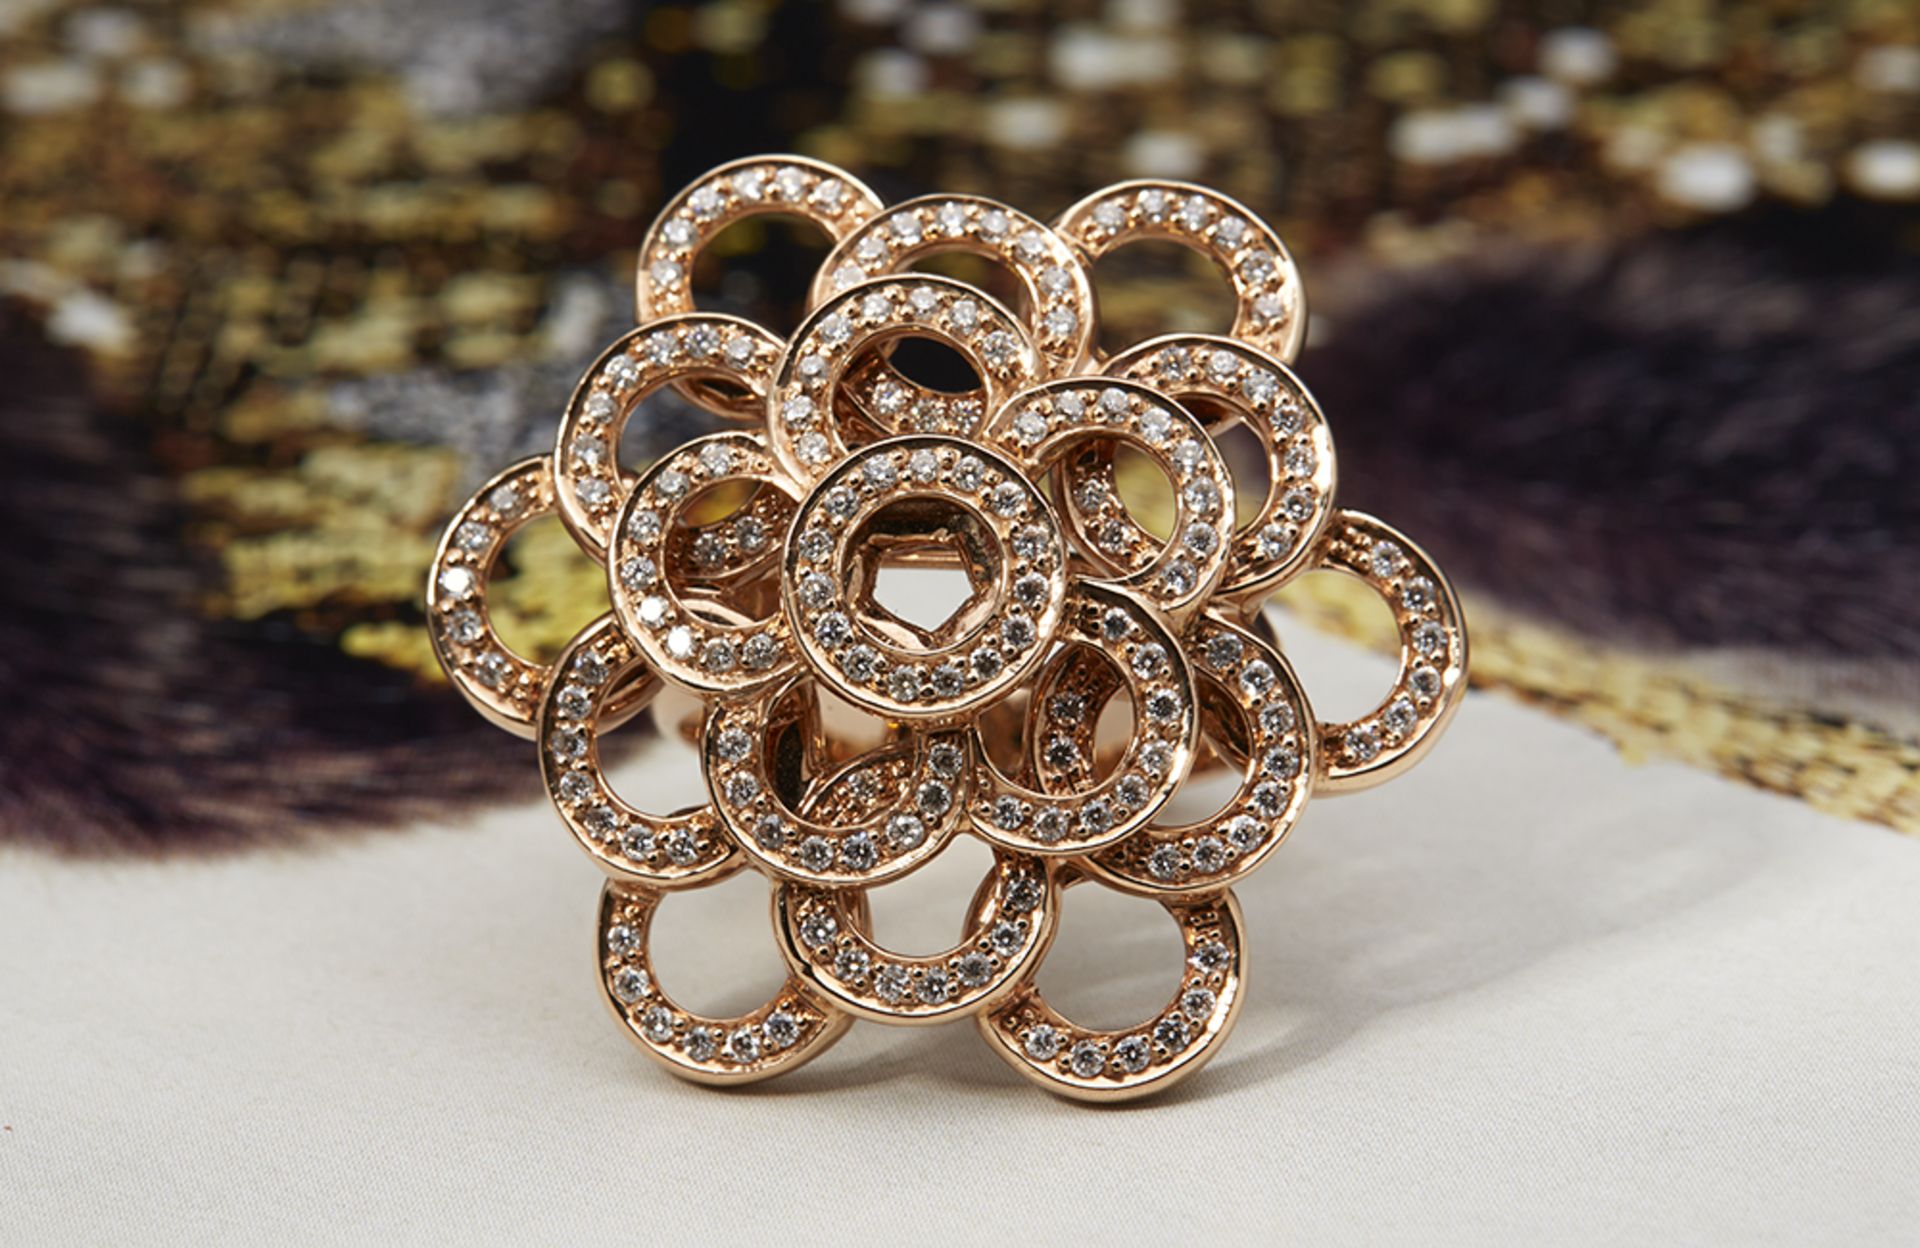 18k Rose Gold 0.73ct Diamond Ring - Image 2 of 5